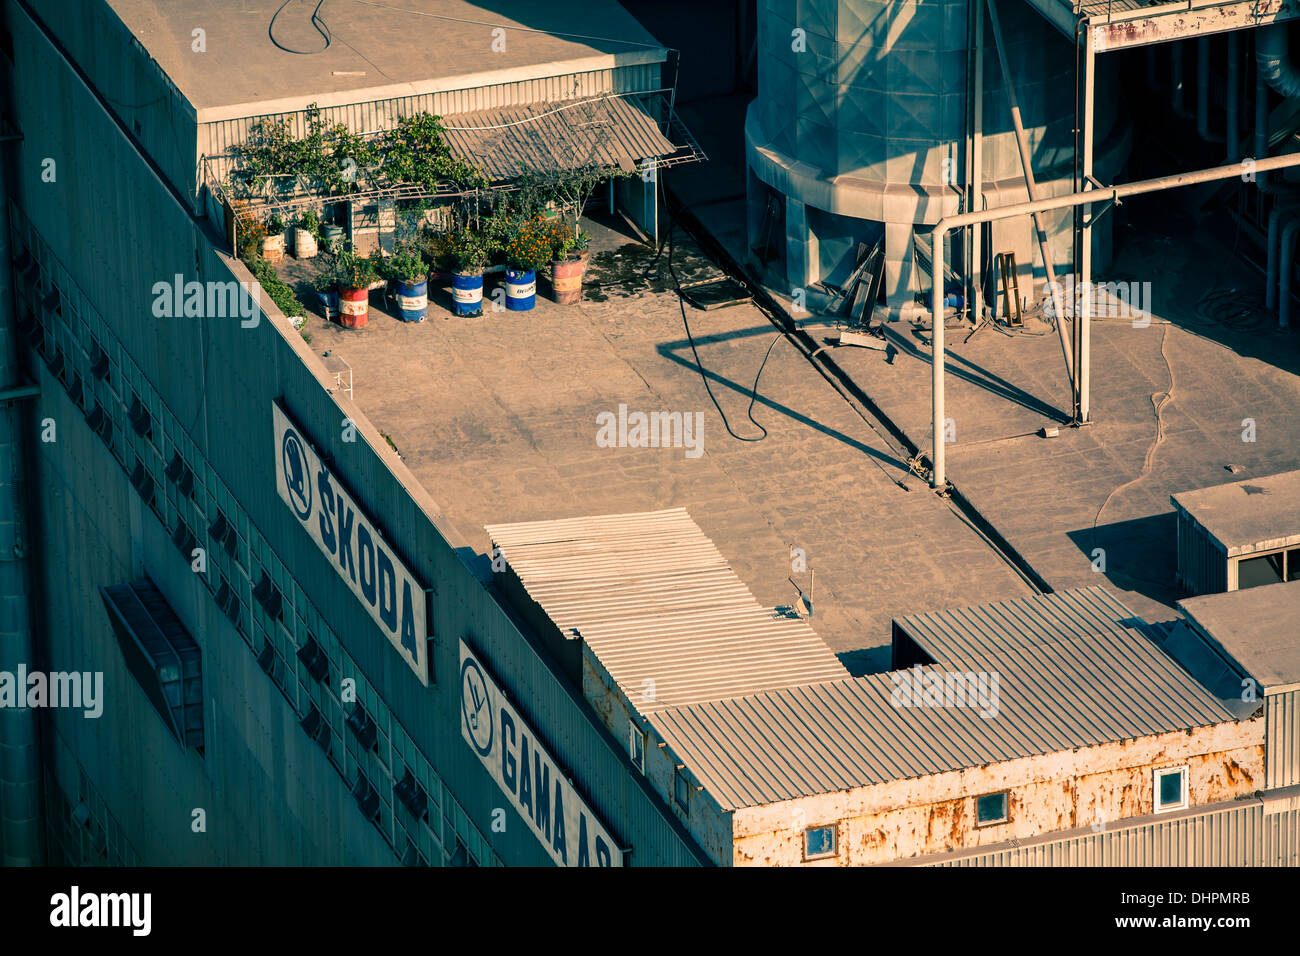 Vista panorámica de la azotea de un edificio industrial con SKODA Y GAMA S.A signos del lado Foto de stock